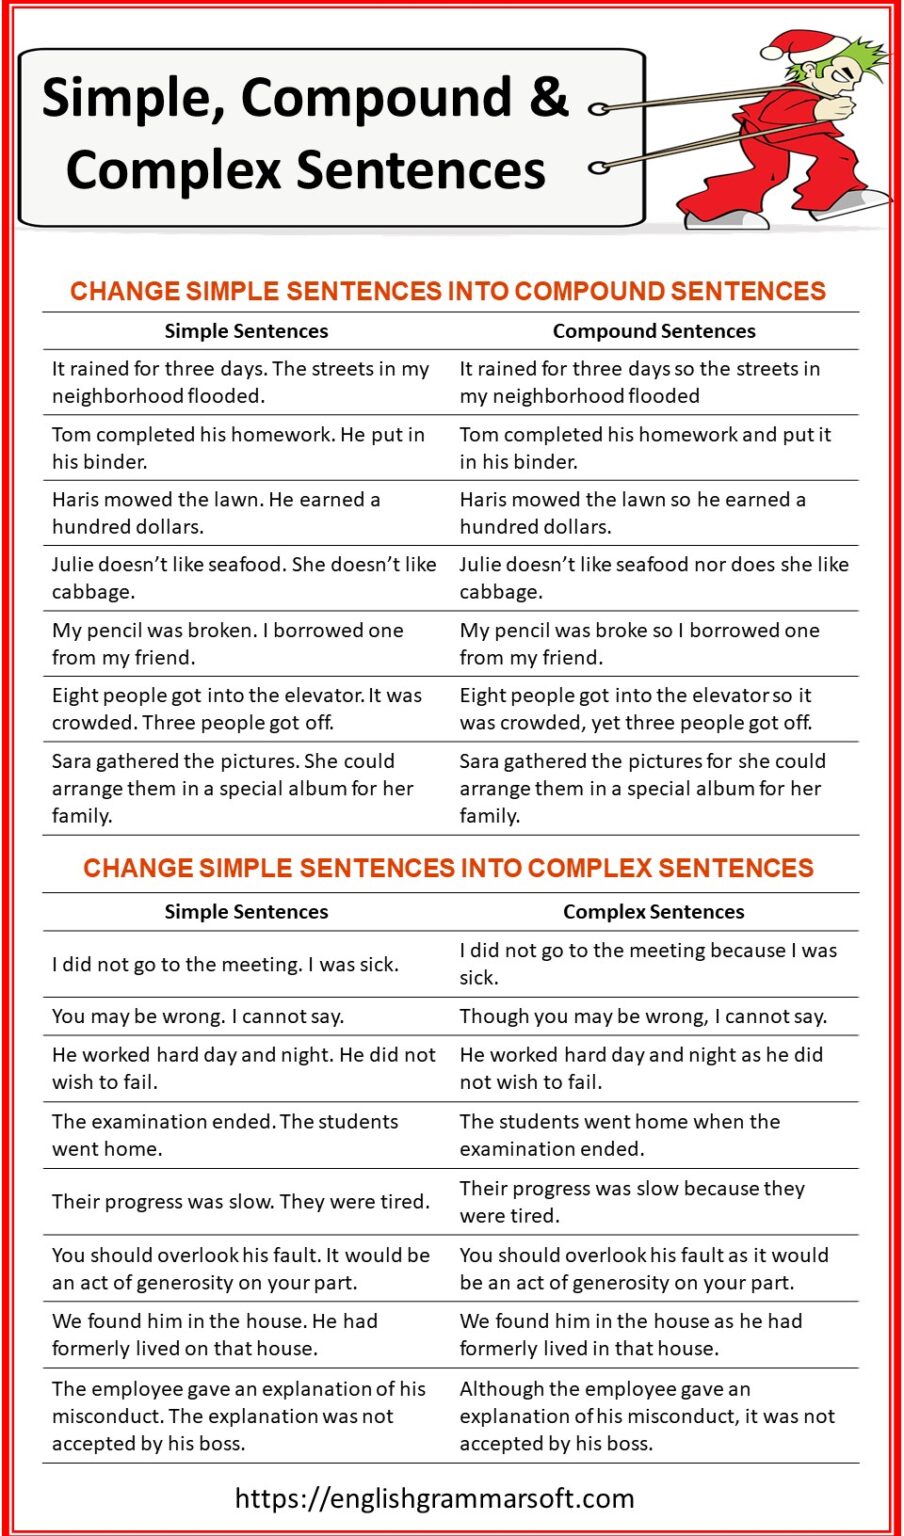 simple-compound-and-complex-sentences-simple-and-compound-sentences